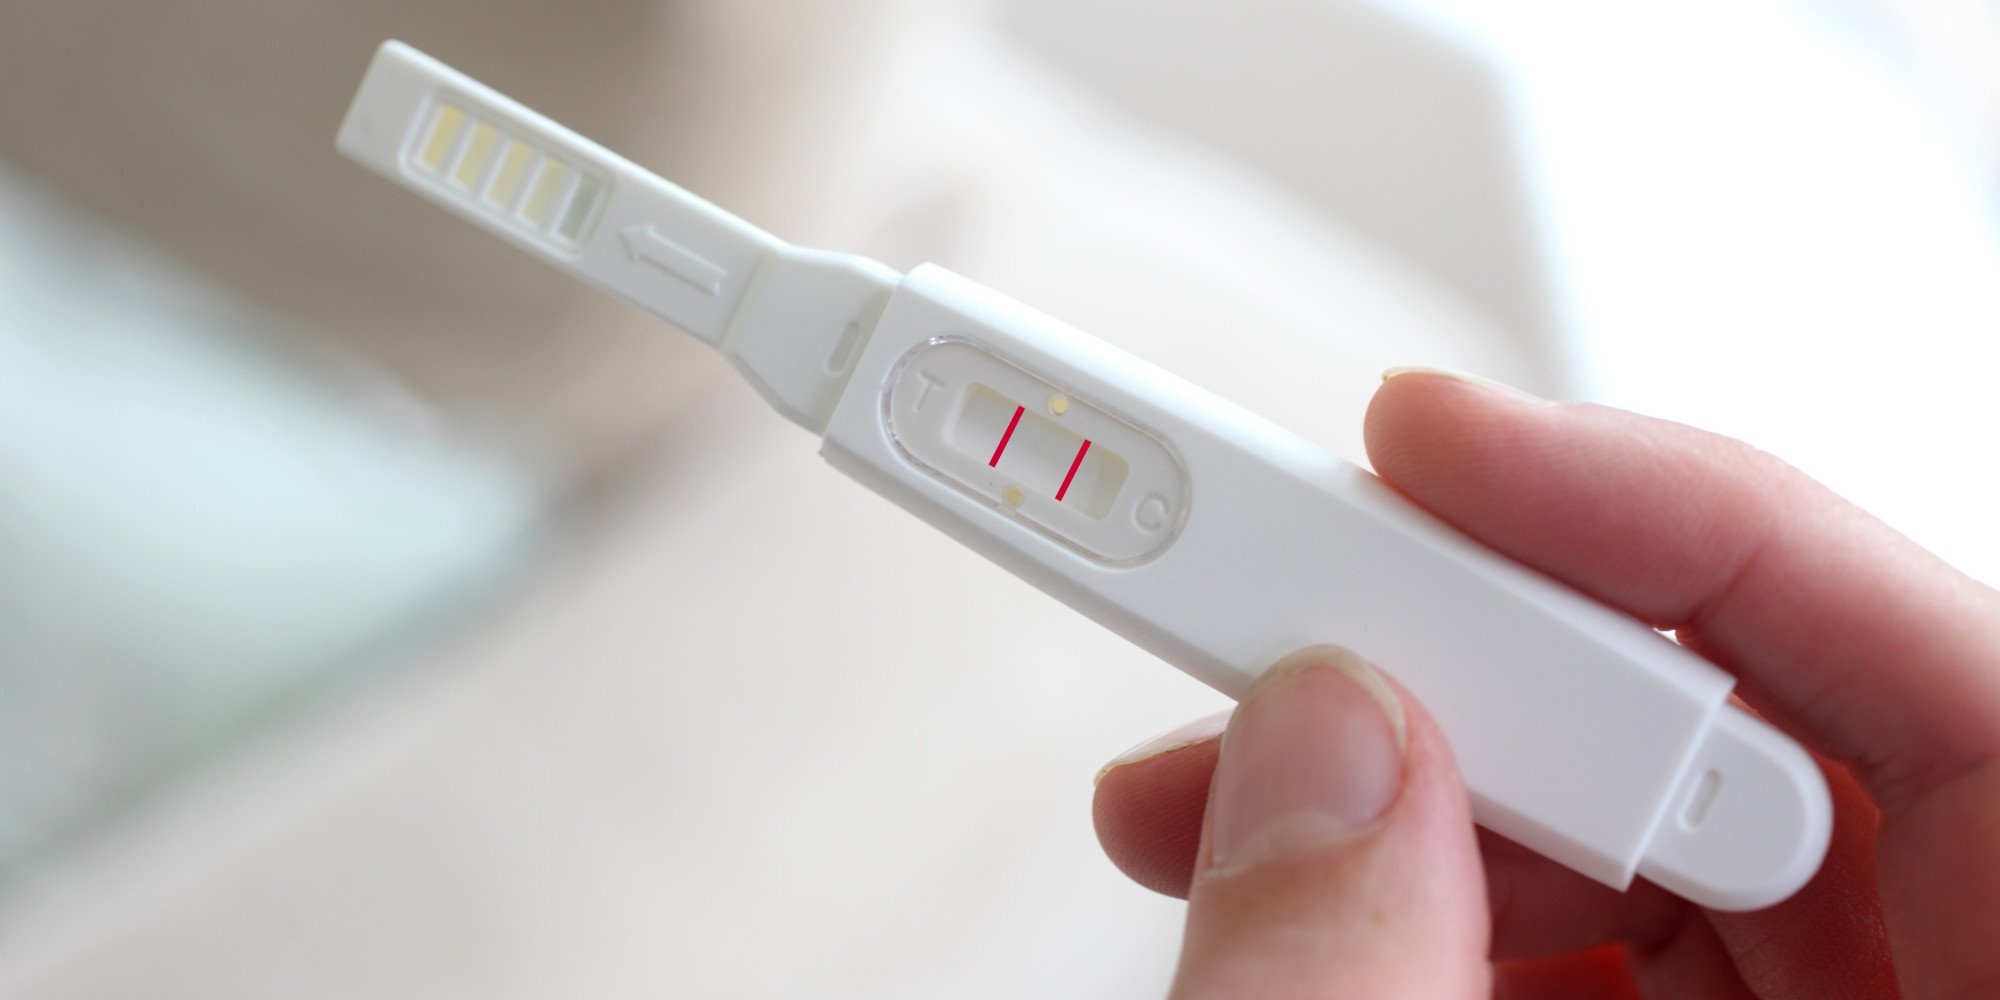 Можно ли делать тест на беременность днем или вечером, или обязательно делать его утром?